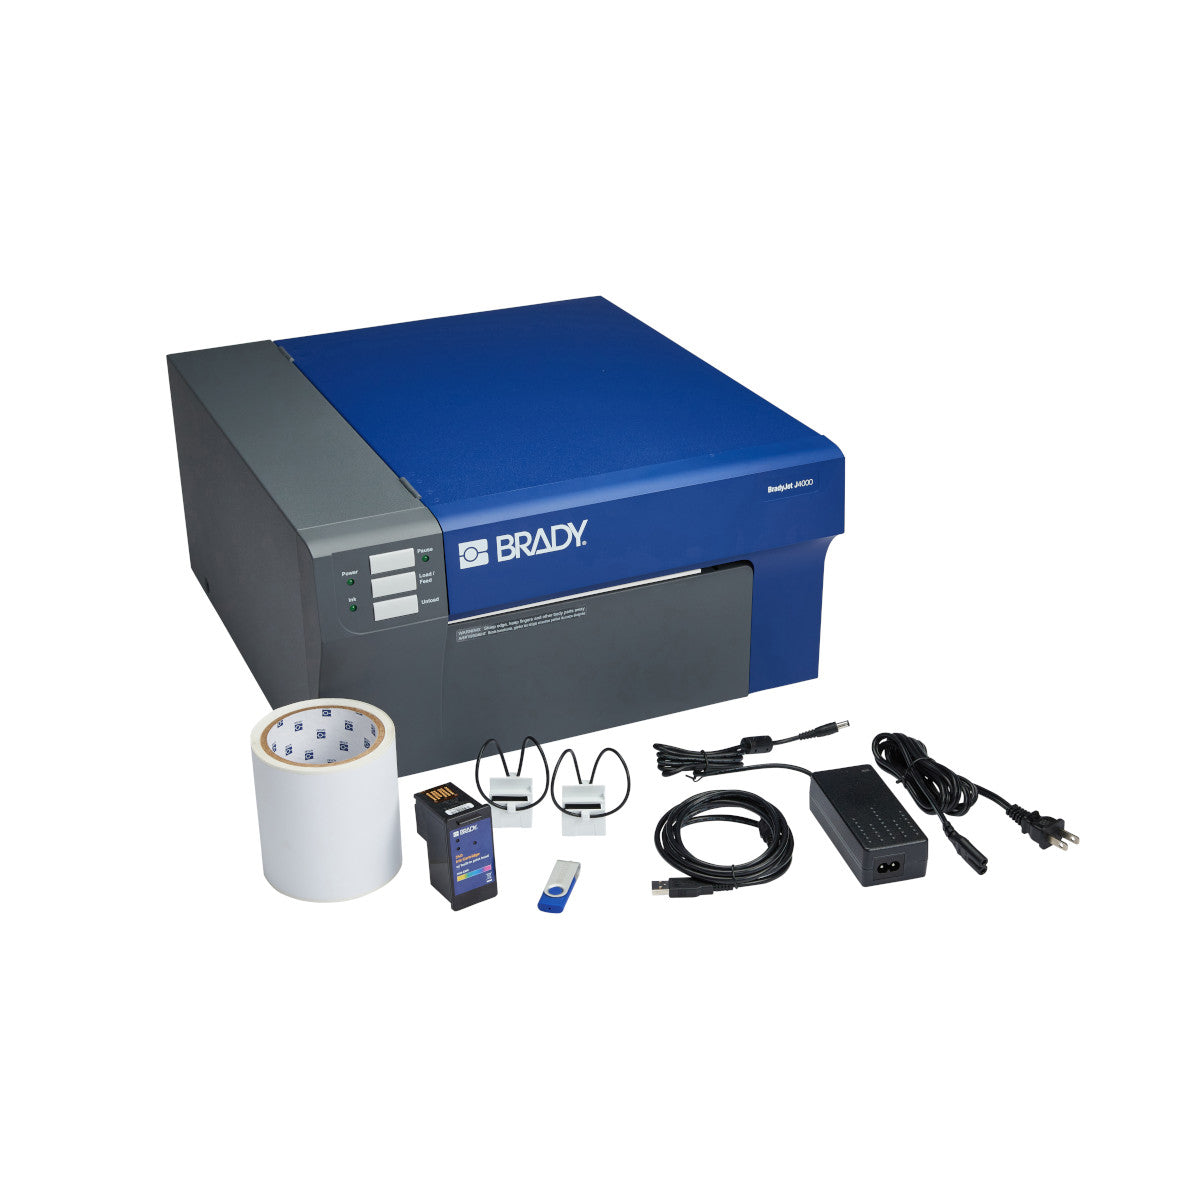 310390 - Stampante per etichette a colori BradyJet J4000 con software Identificazione di laboratorio